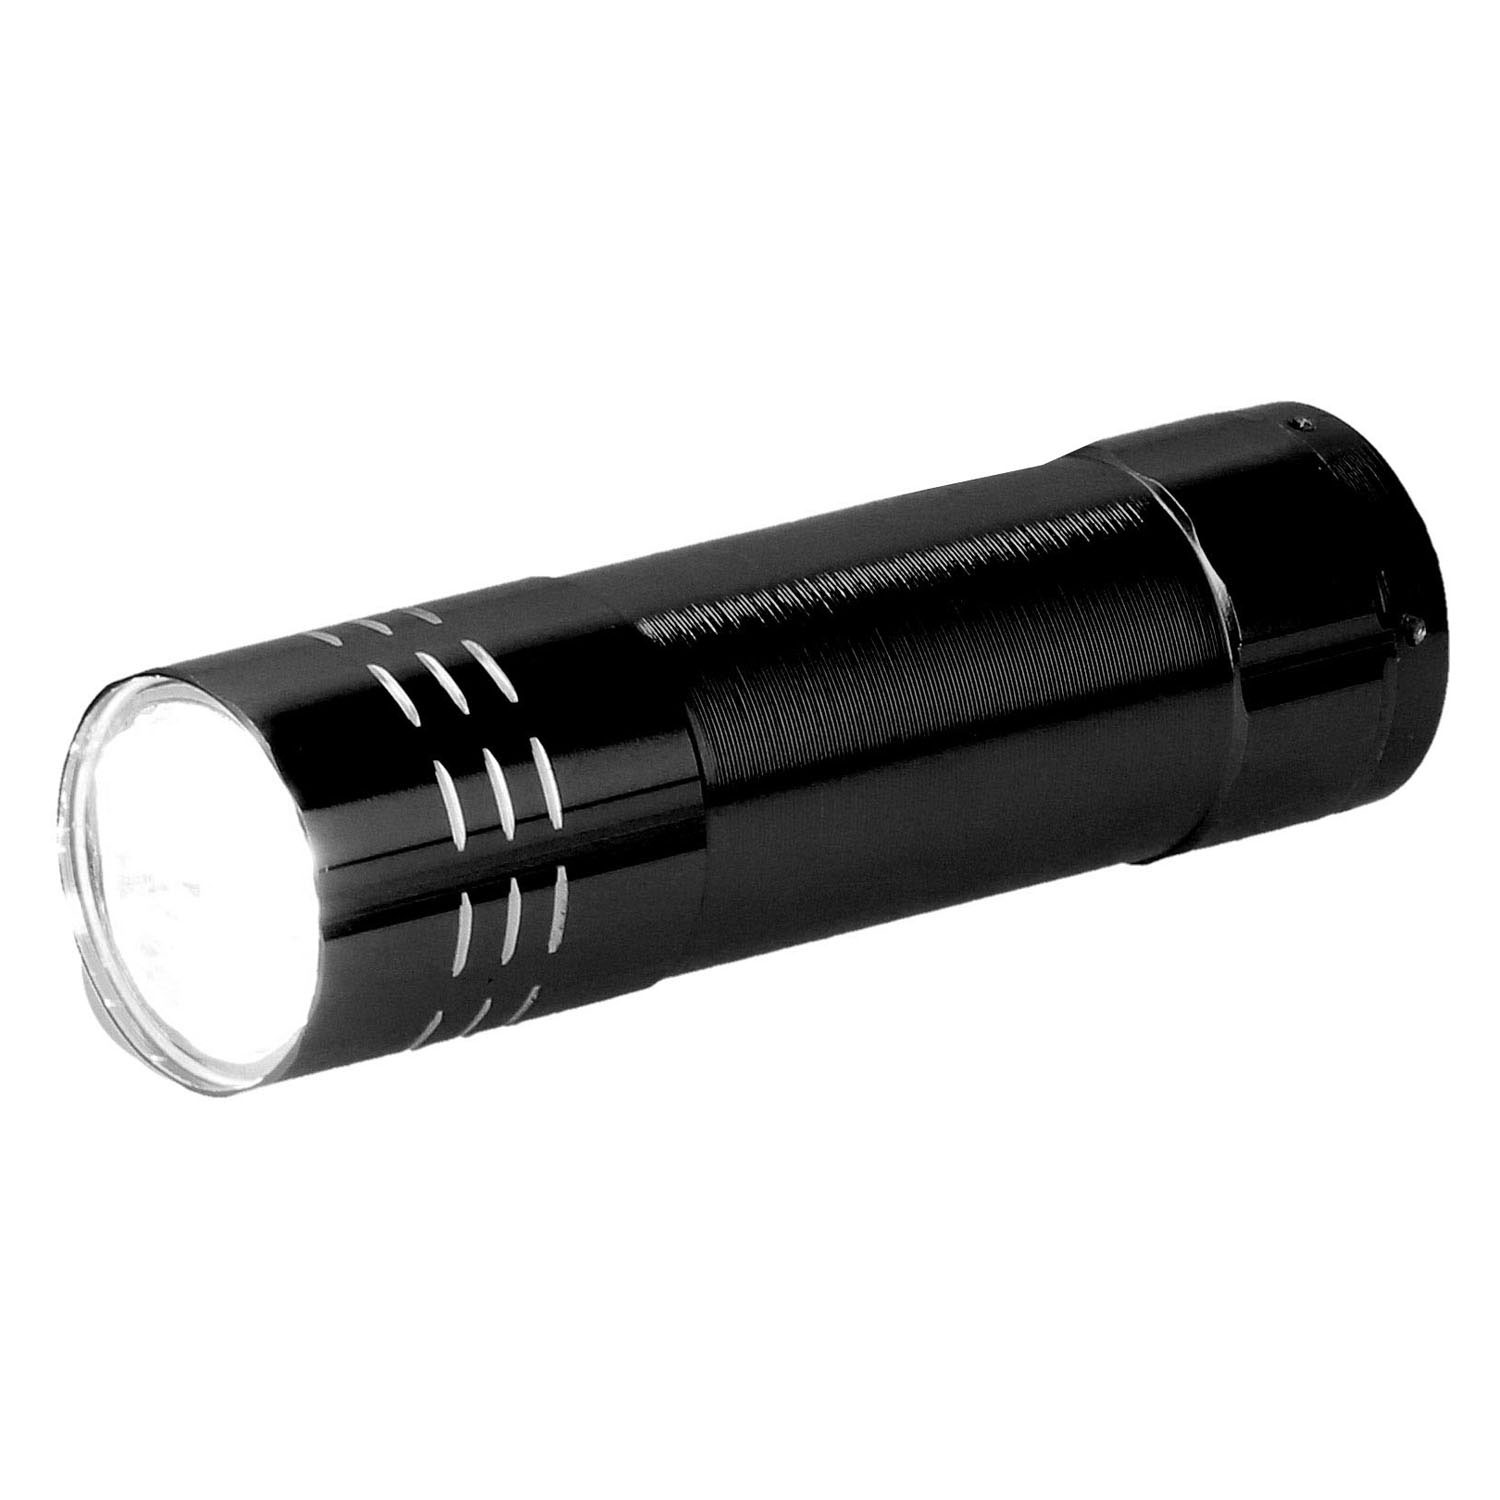 Farbige Aluminium-Taschenlampe – 9 LED